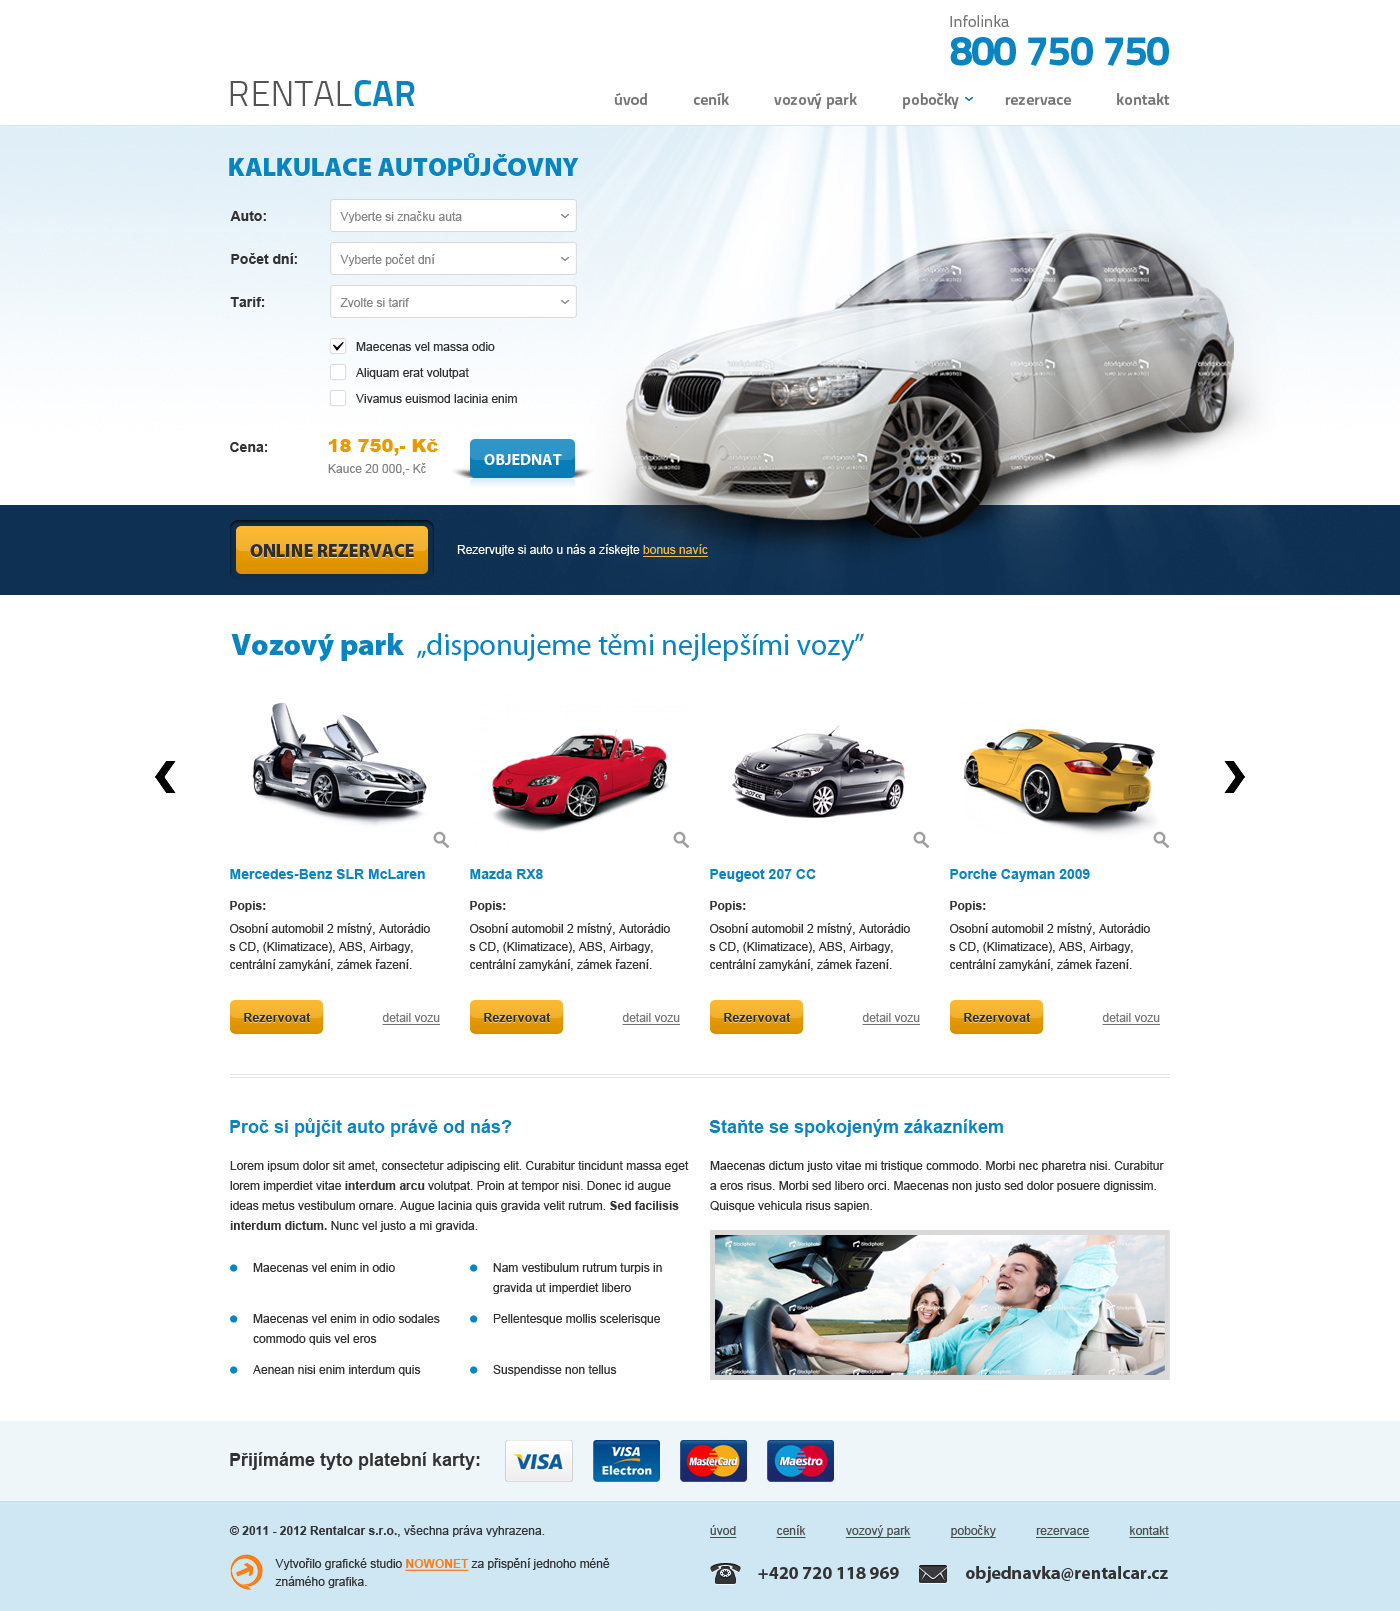 汽车服务类网站首页界面